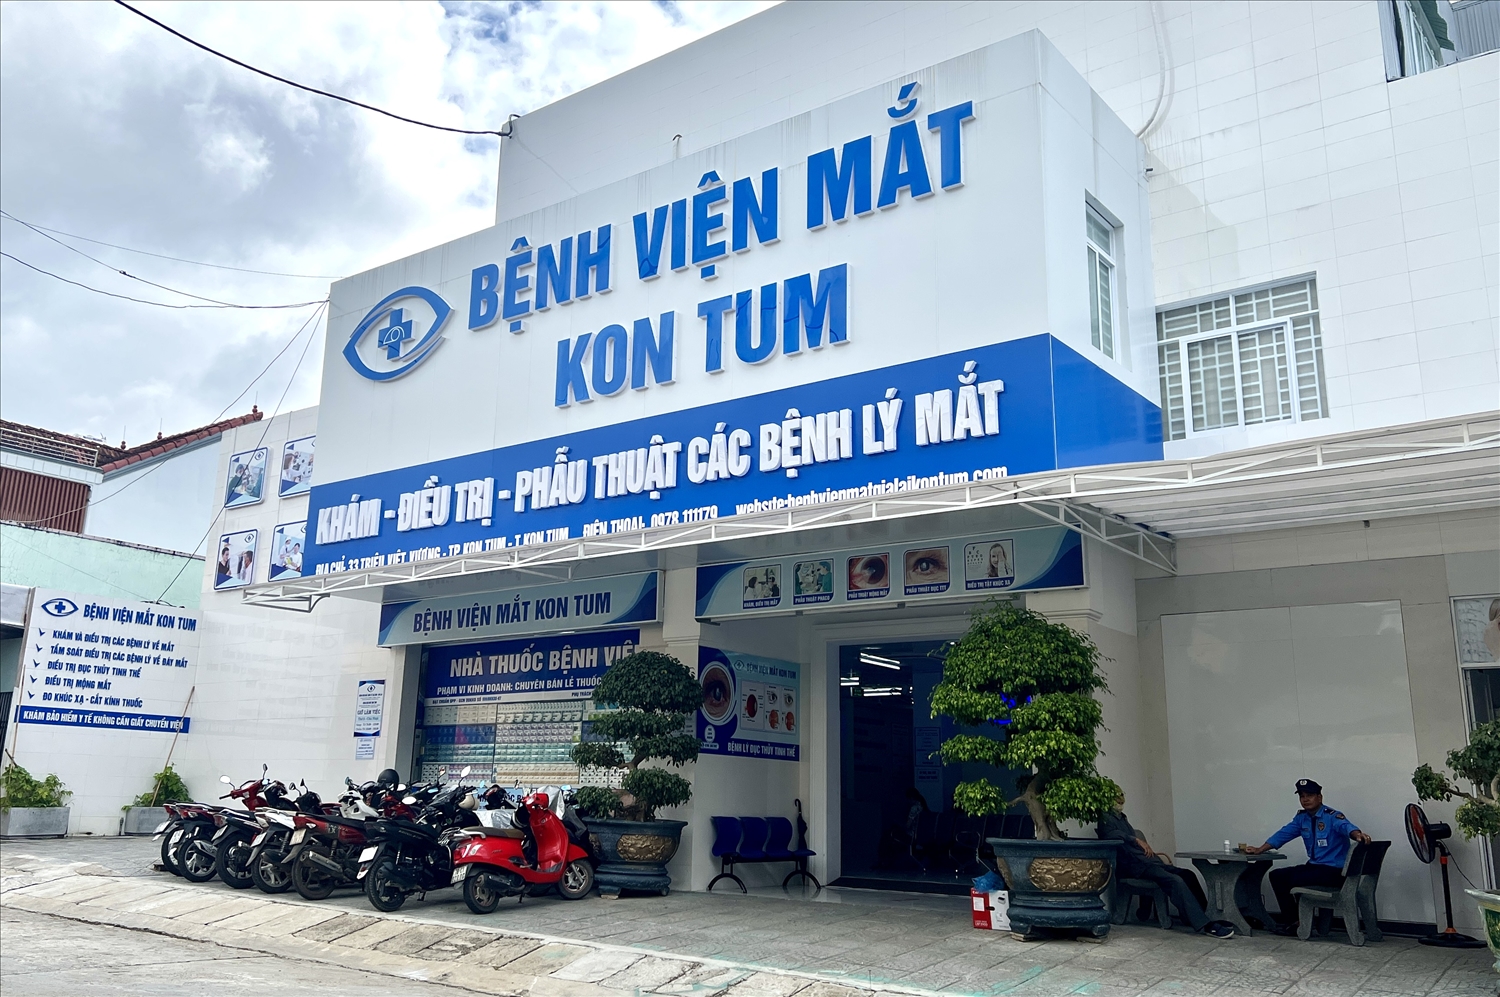 Bệnh viện Mắt Kon Tum giúp người dân có thêm lựa chọn và tiếp cận với dịch vụ chữa trị các bệnh về mắt chuyên nghiệp thuận lợi hơn